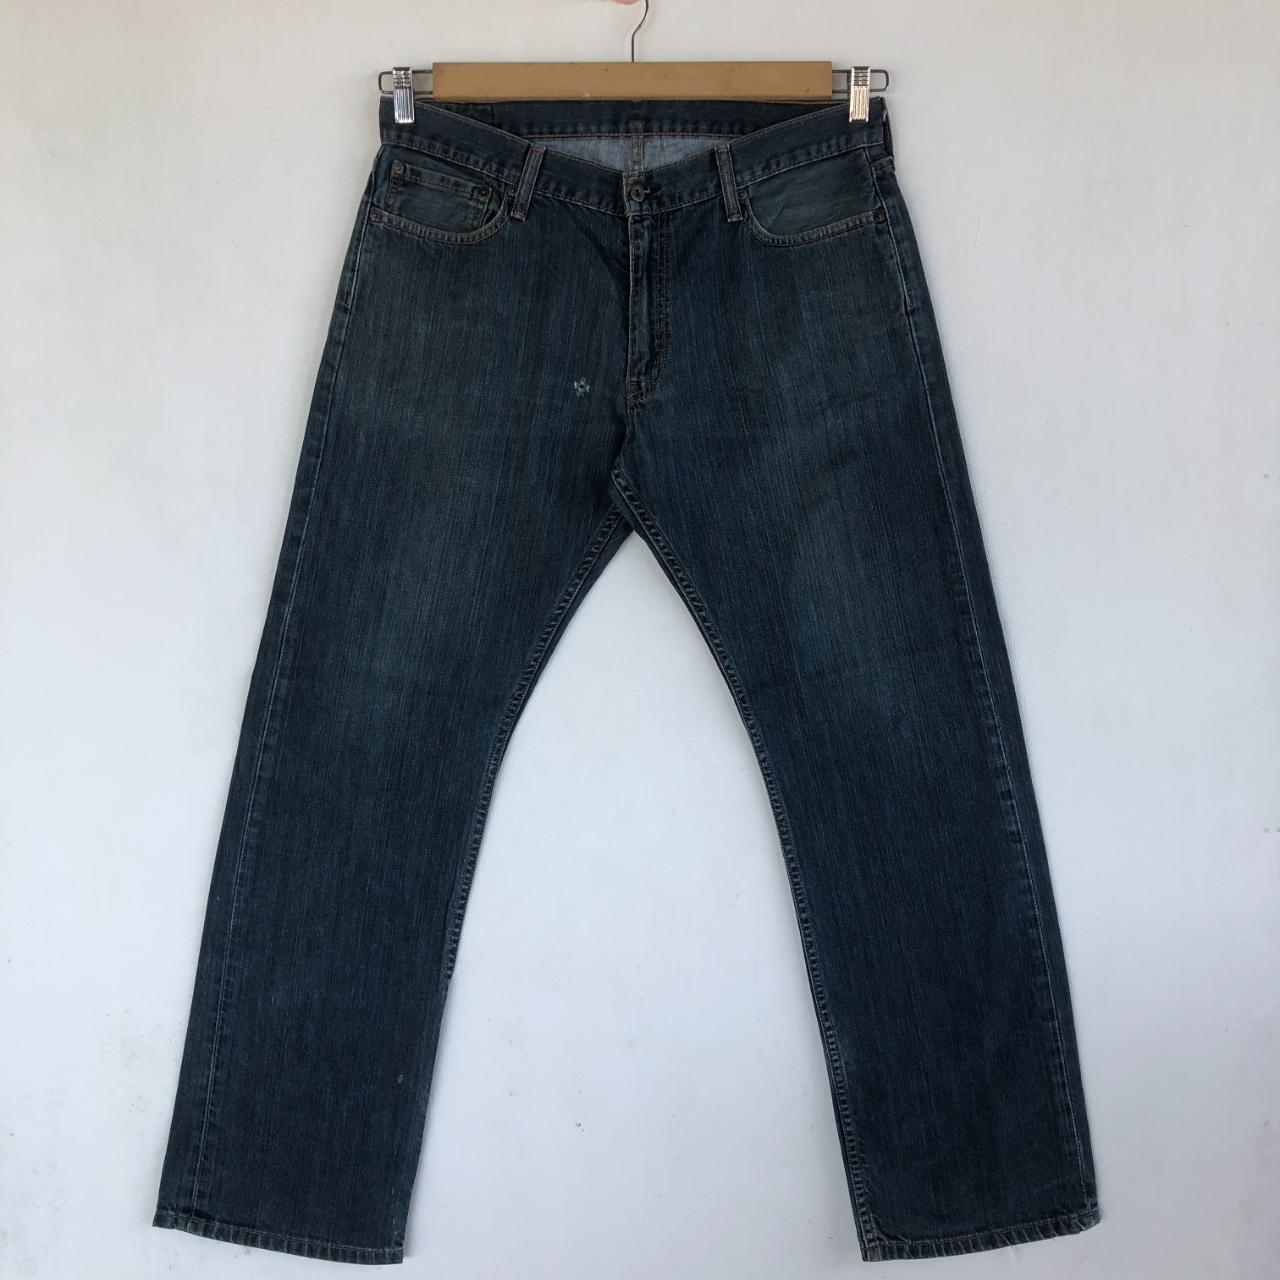 Vintage Levis Jeans Levis 514 Denim Pants Manual... - Depop